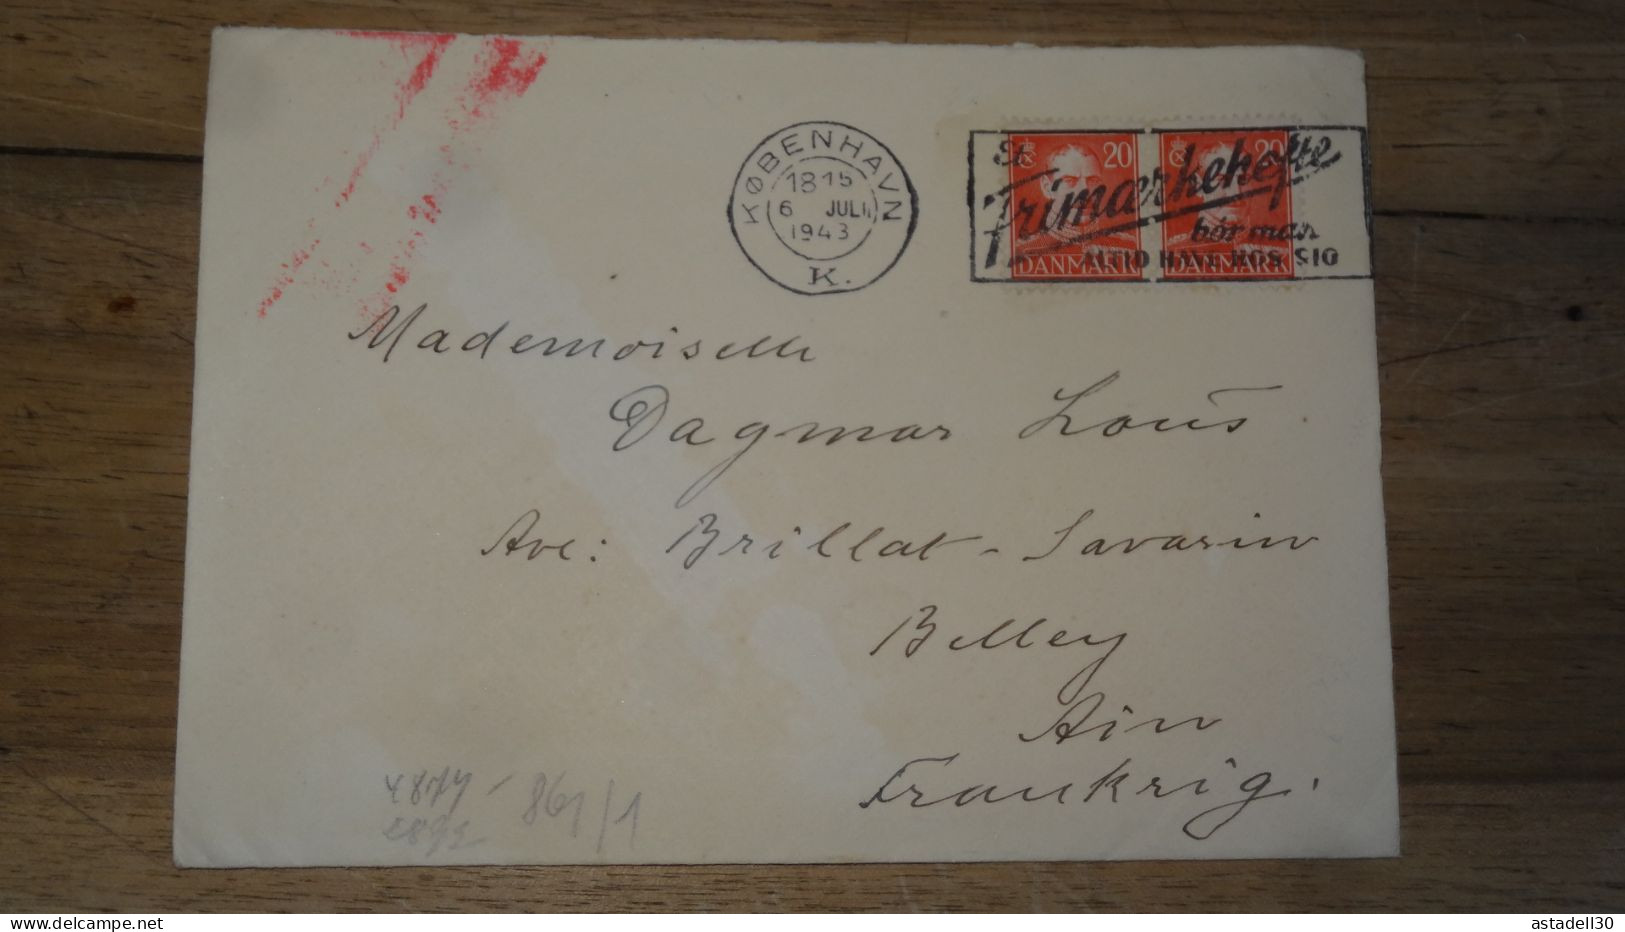 Enveloppe DANEMARK, Kobenhavn, Cenored To France - 1943   ......... Boite1 ...... 240424-83 - Covers & Documents